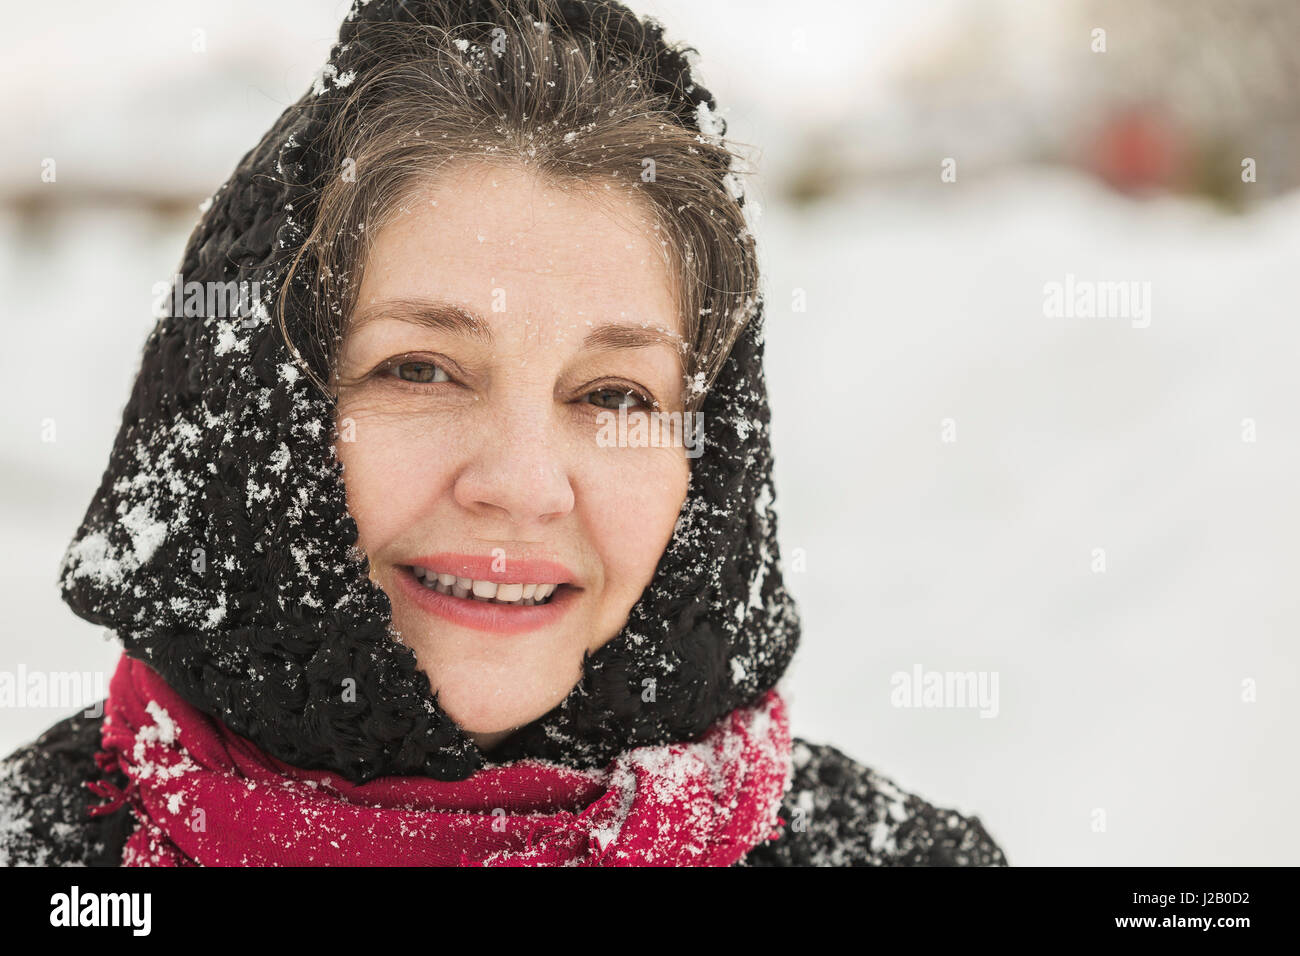 Portrait of smiling senior woman in winter wear couverte de neige Banque D'Images